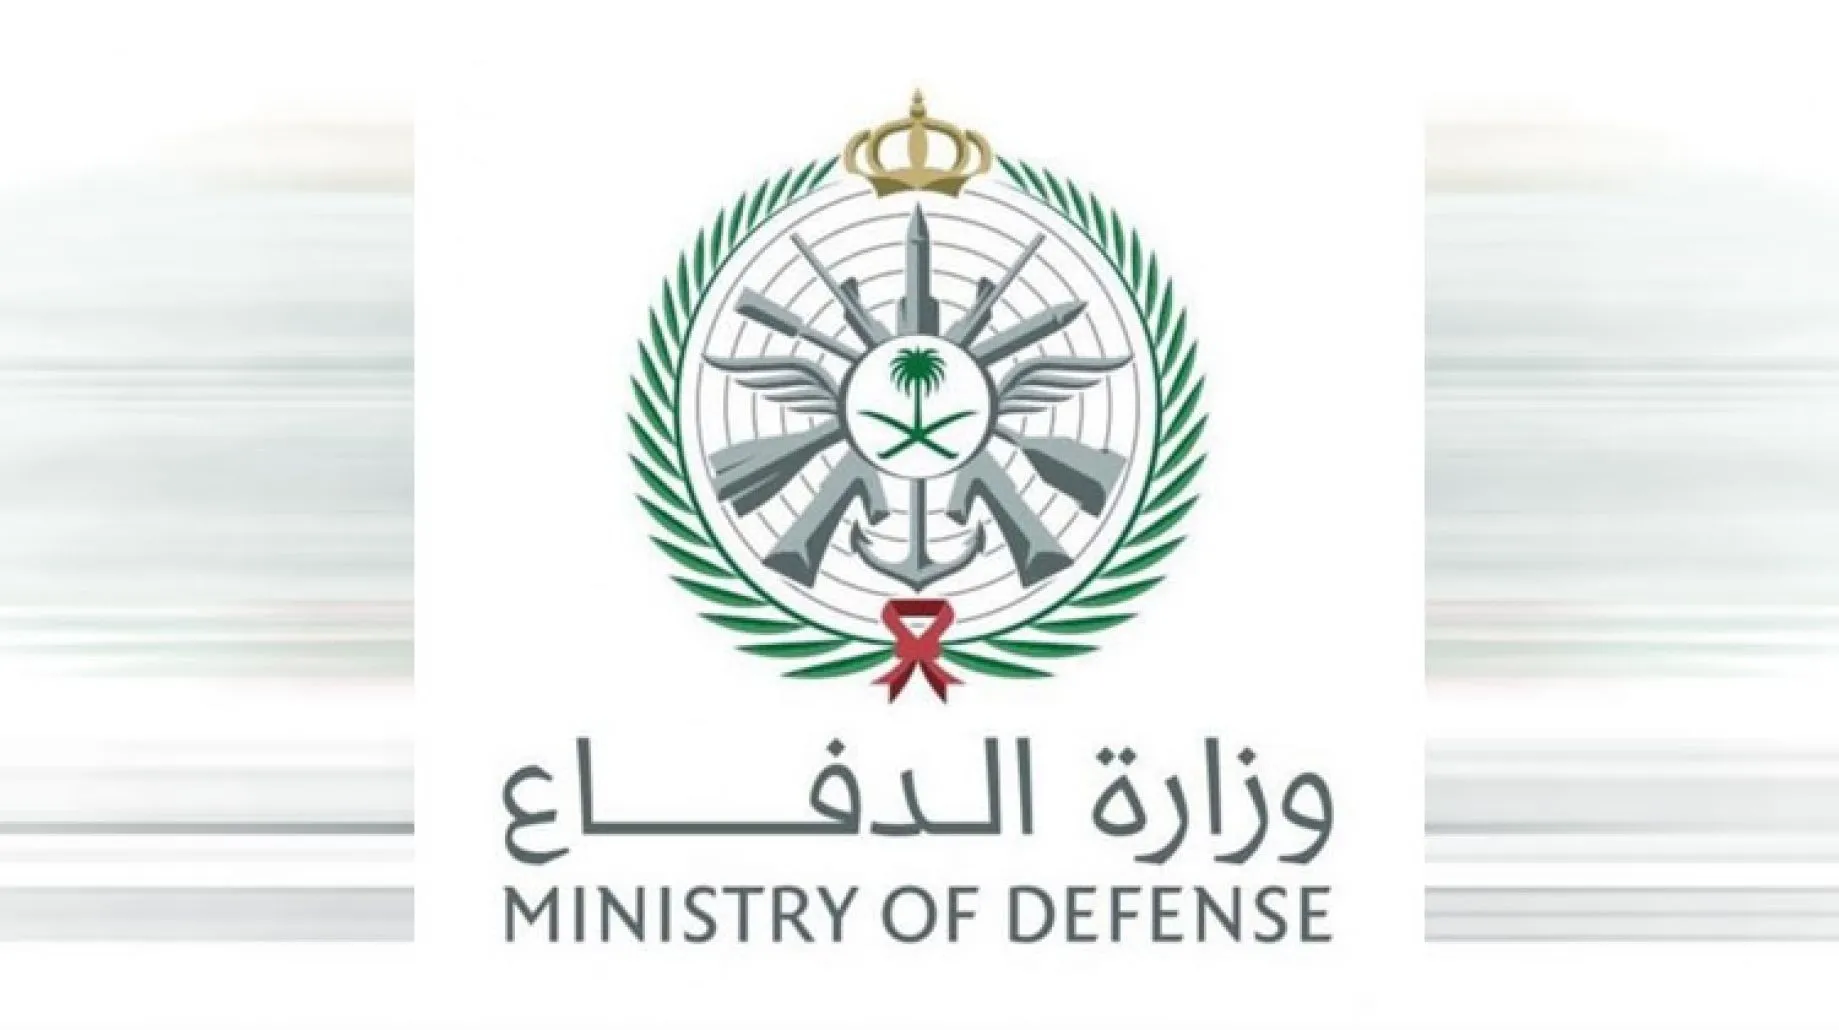 وزارة الدفاع تعلن 20 وظيفة في هيئة إدارة القوات الجوية لحملة الثانوية فأعلى طالع رابط التسجيل والشروط